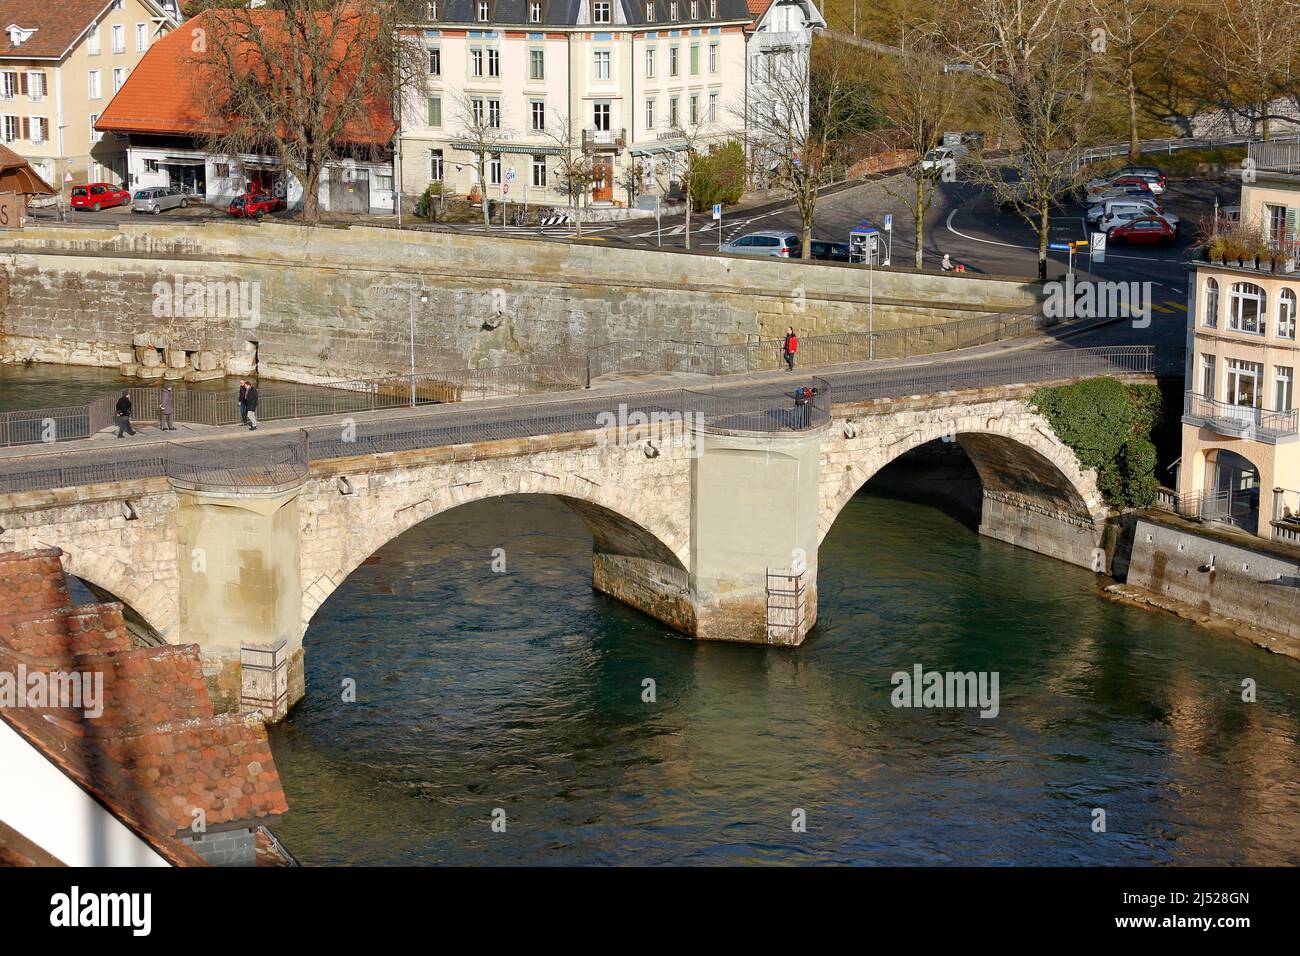 Berna, Suiza - 22 de diciembre de 2015: El Untertorbruecke (Puente de la Puerta Inferior), es un puente arco de piedra a través del río Aare. Este puente fue construido Foto de stock